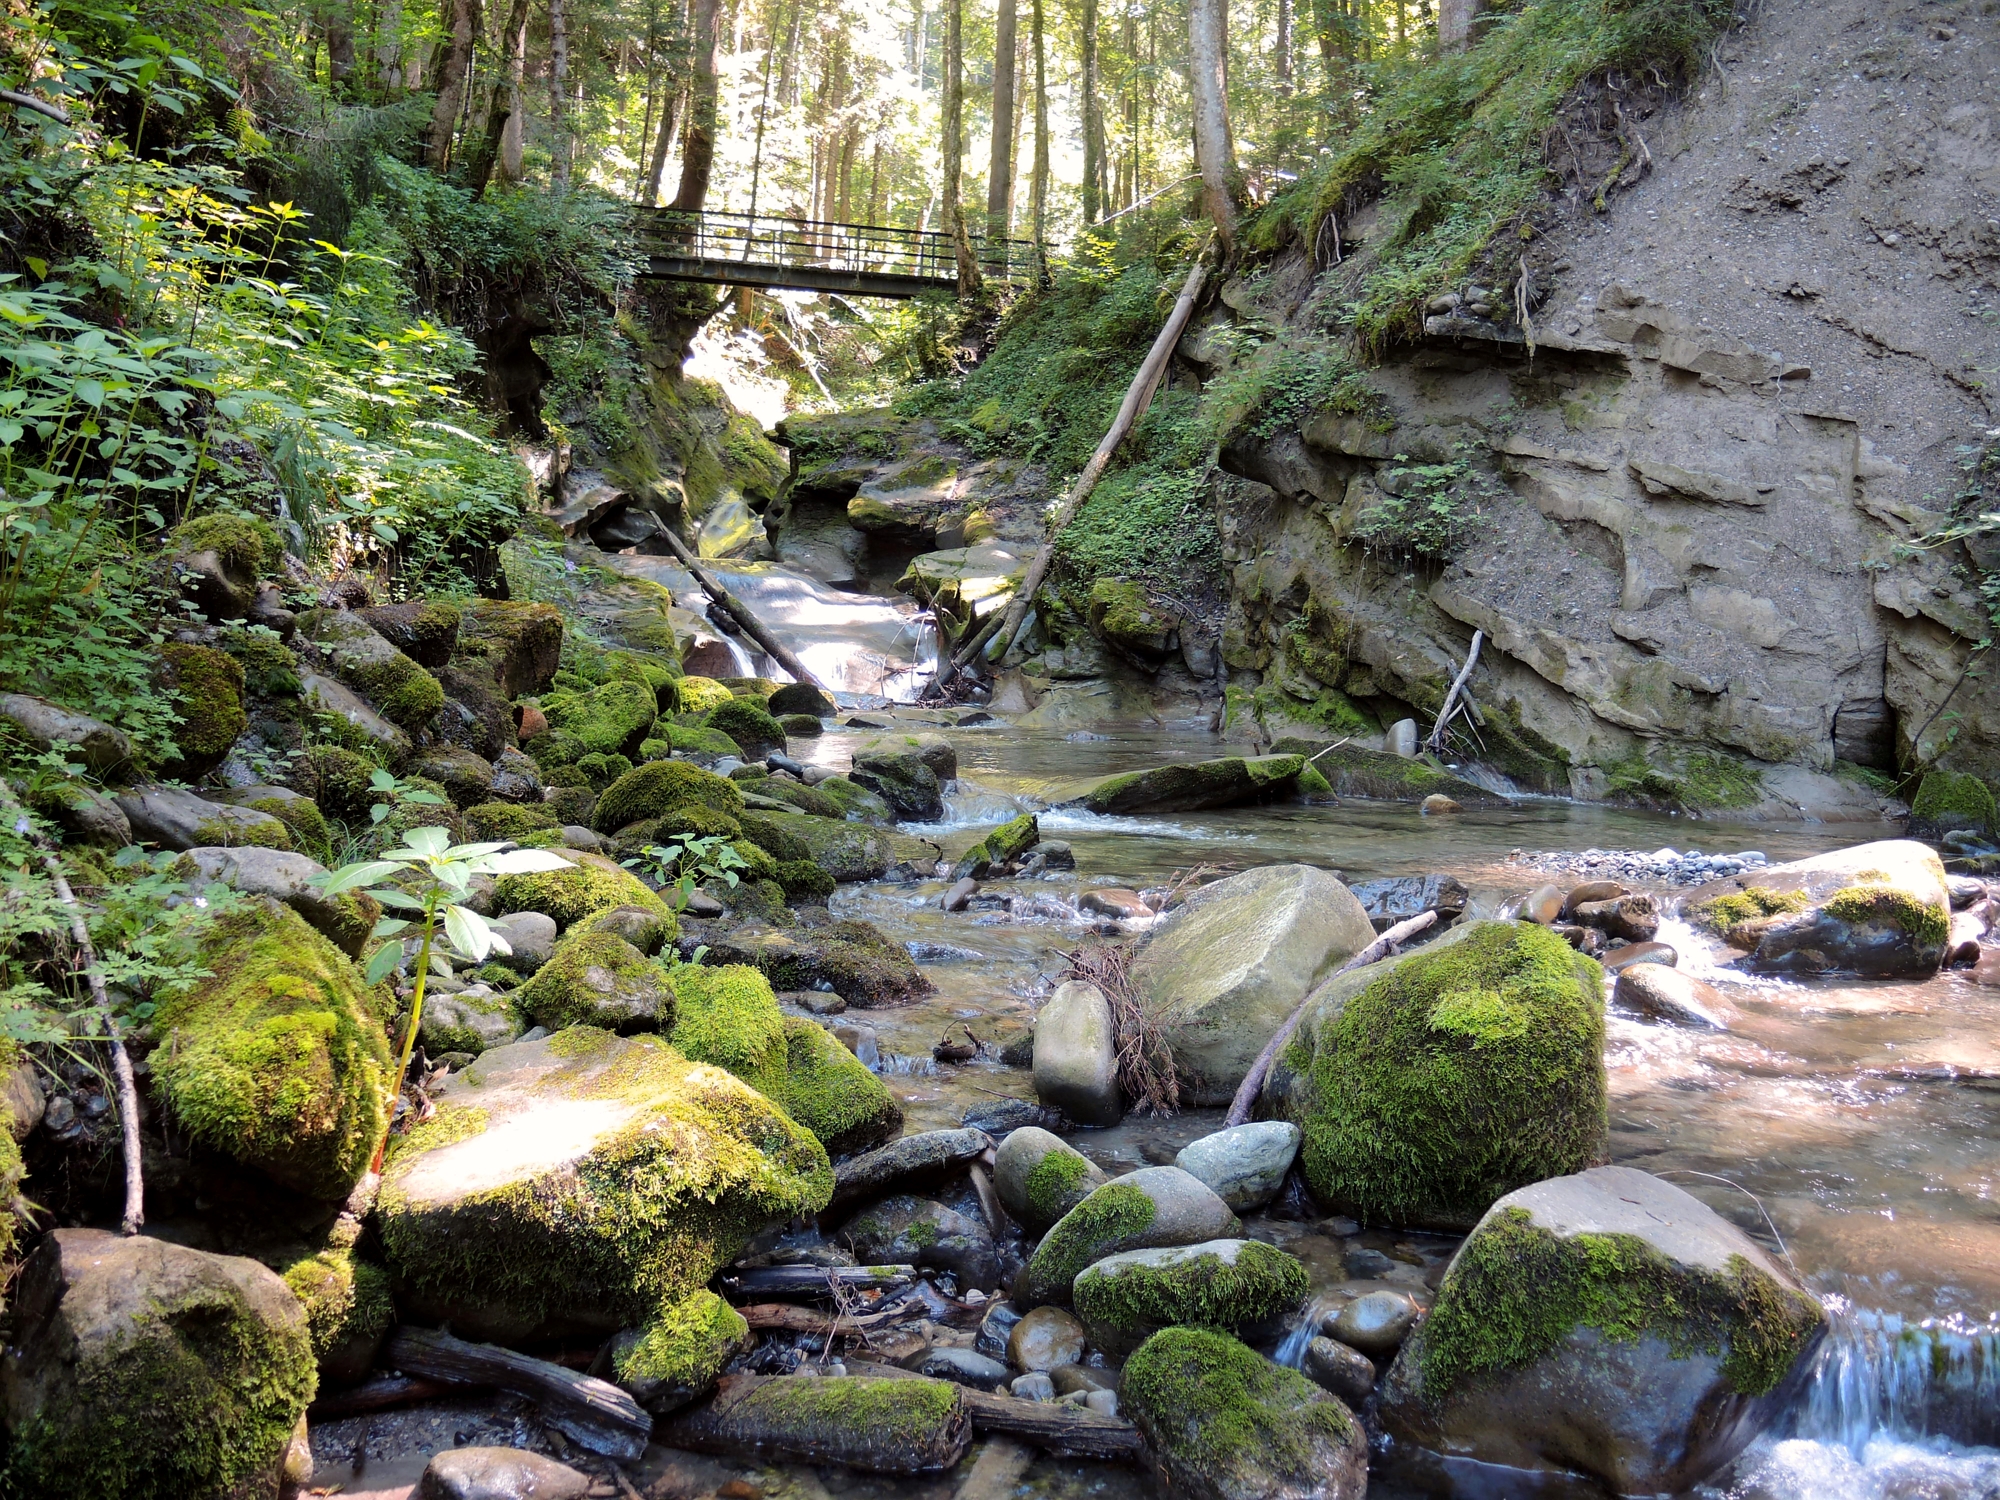  Fluss fließt über moosbewachsene Steine im Wald - das Bild wird mit Klick vergrößert 